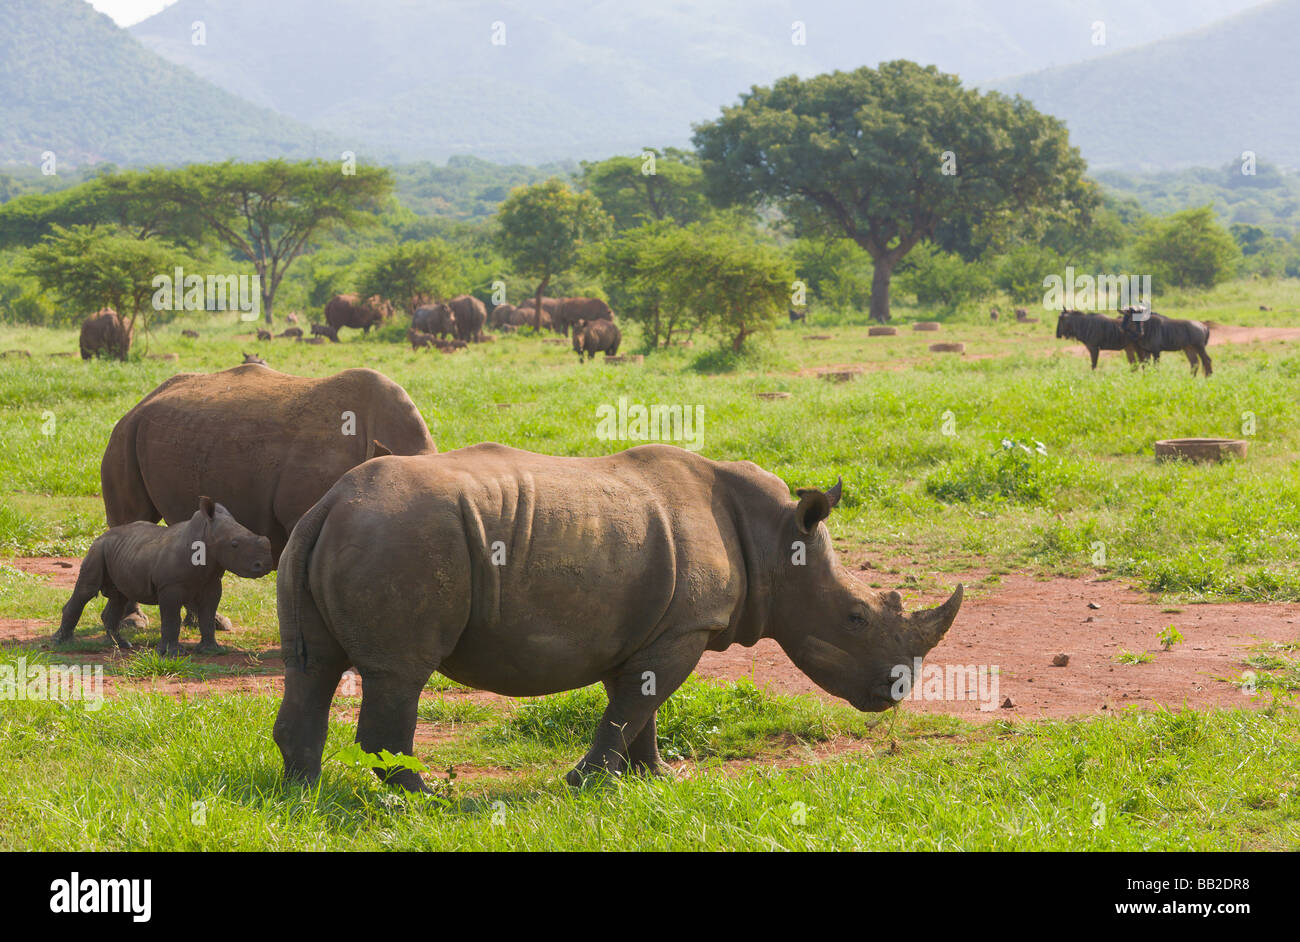 Rhinocéros blanc, Ceratotherium simum, 'South Africa' Banque D'Images